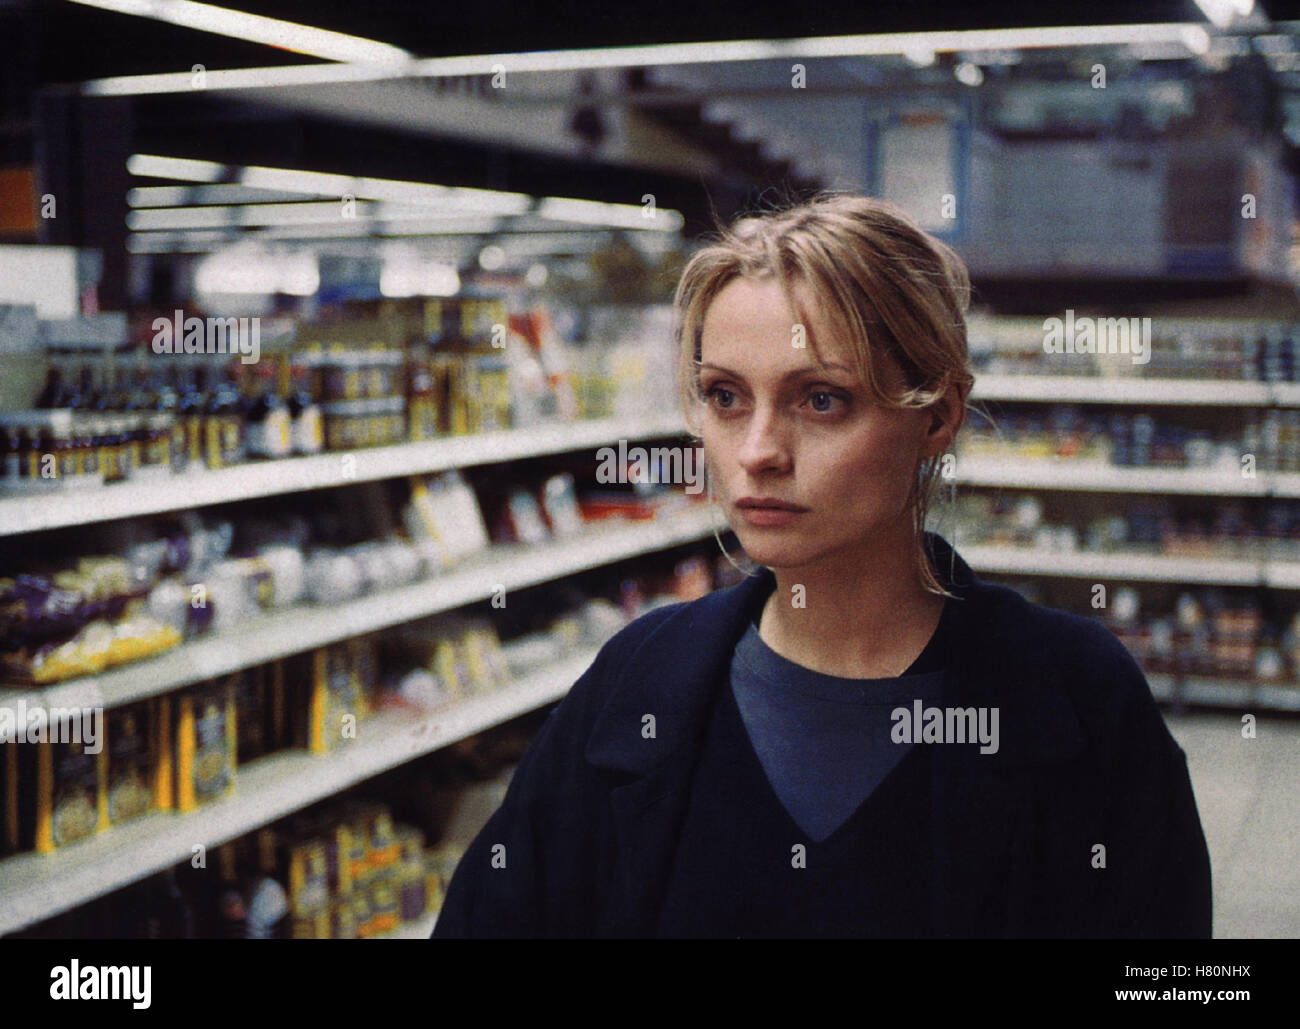 Hunger - Sehnsucht nach Liebe, (HUNGER - SEHNSUCHT NACH LIEBE) D 1997, Regie: Dana Vavrova, CATHERINE FLEMMING, Stichwort: Supermarkt, Einkaufen Stock Photo